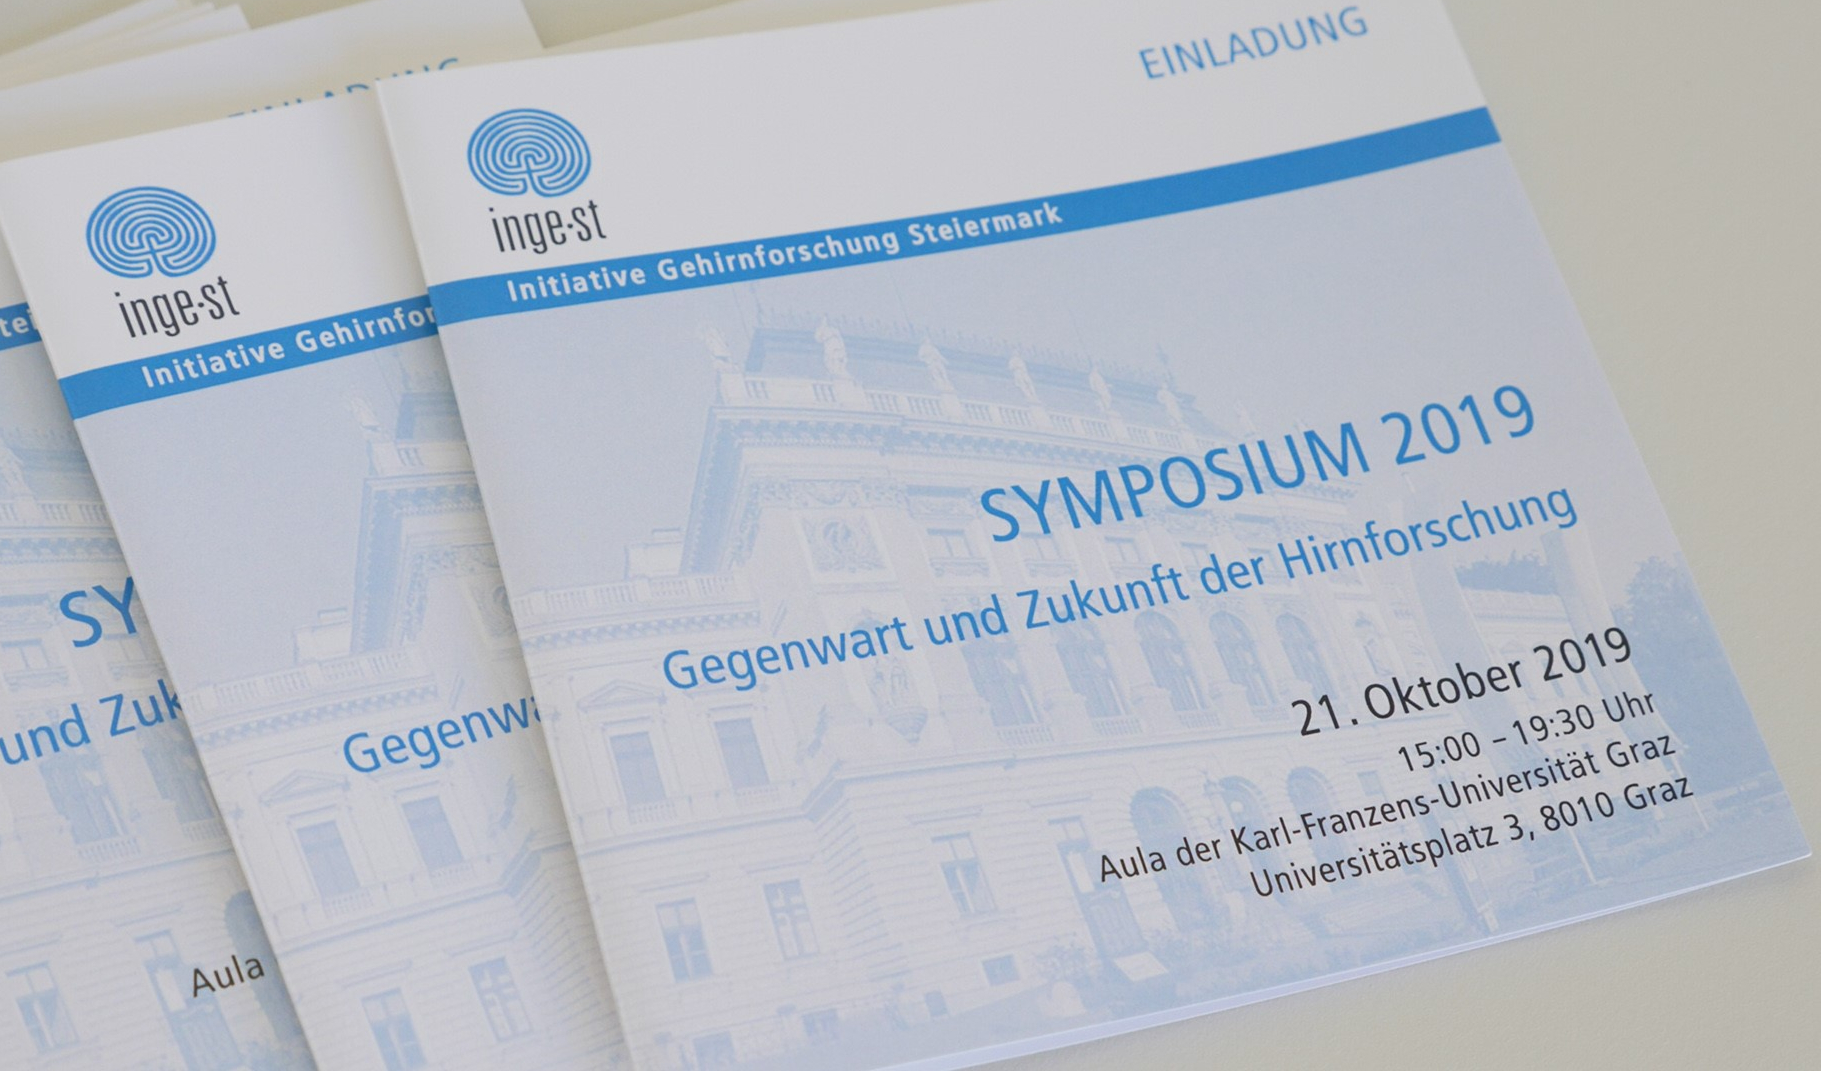 INGE St. Symposium 2019: Gegenwart & Zukunft der Hirnforschung - Eventvideo